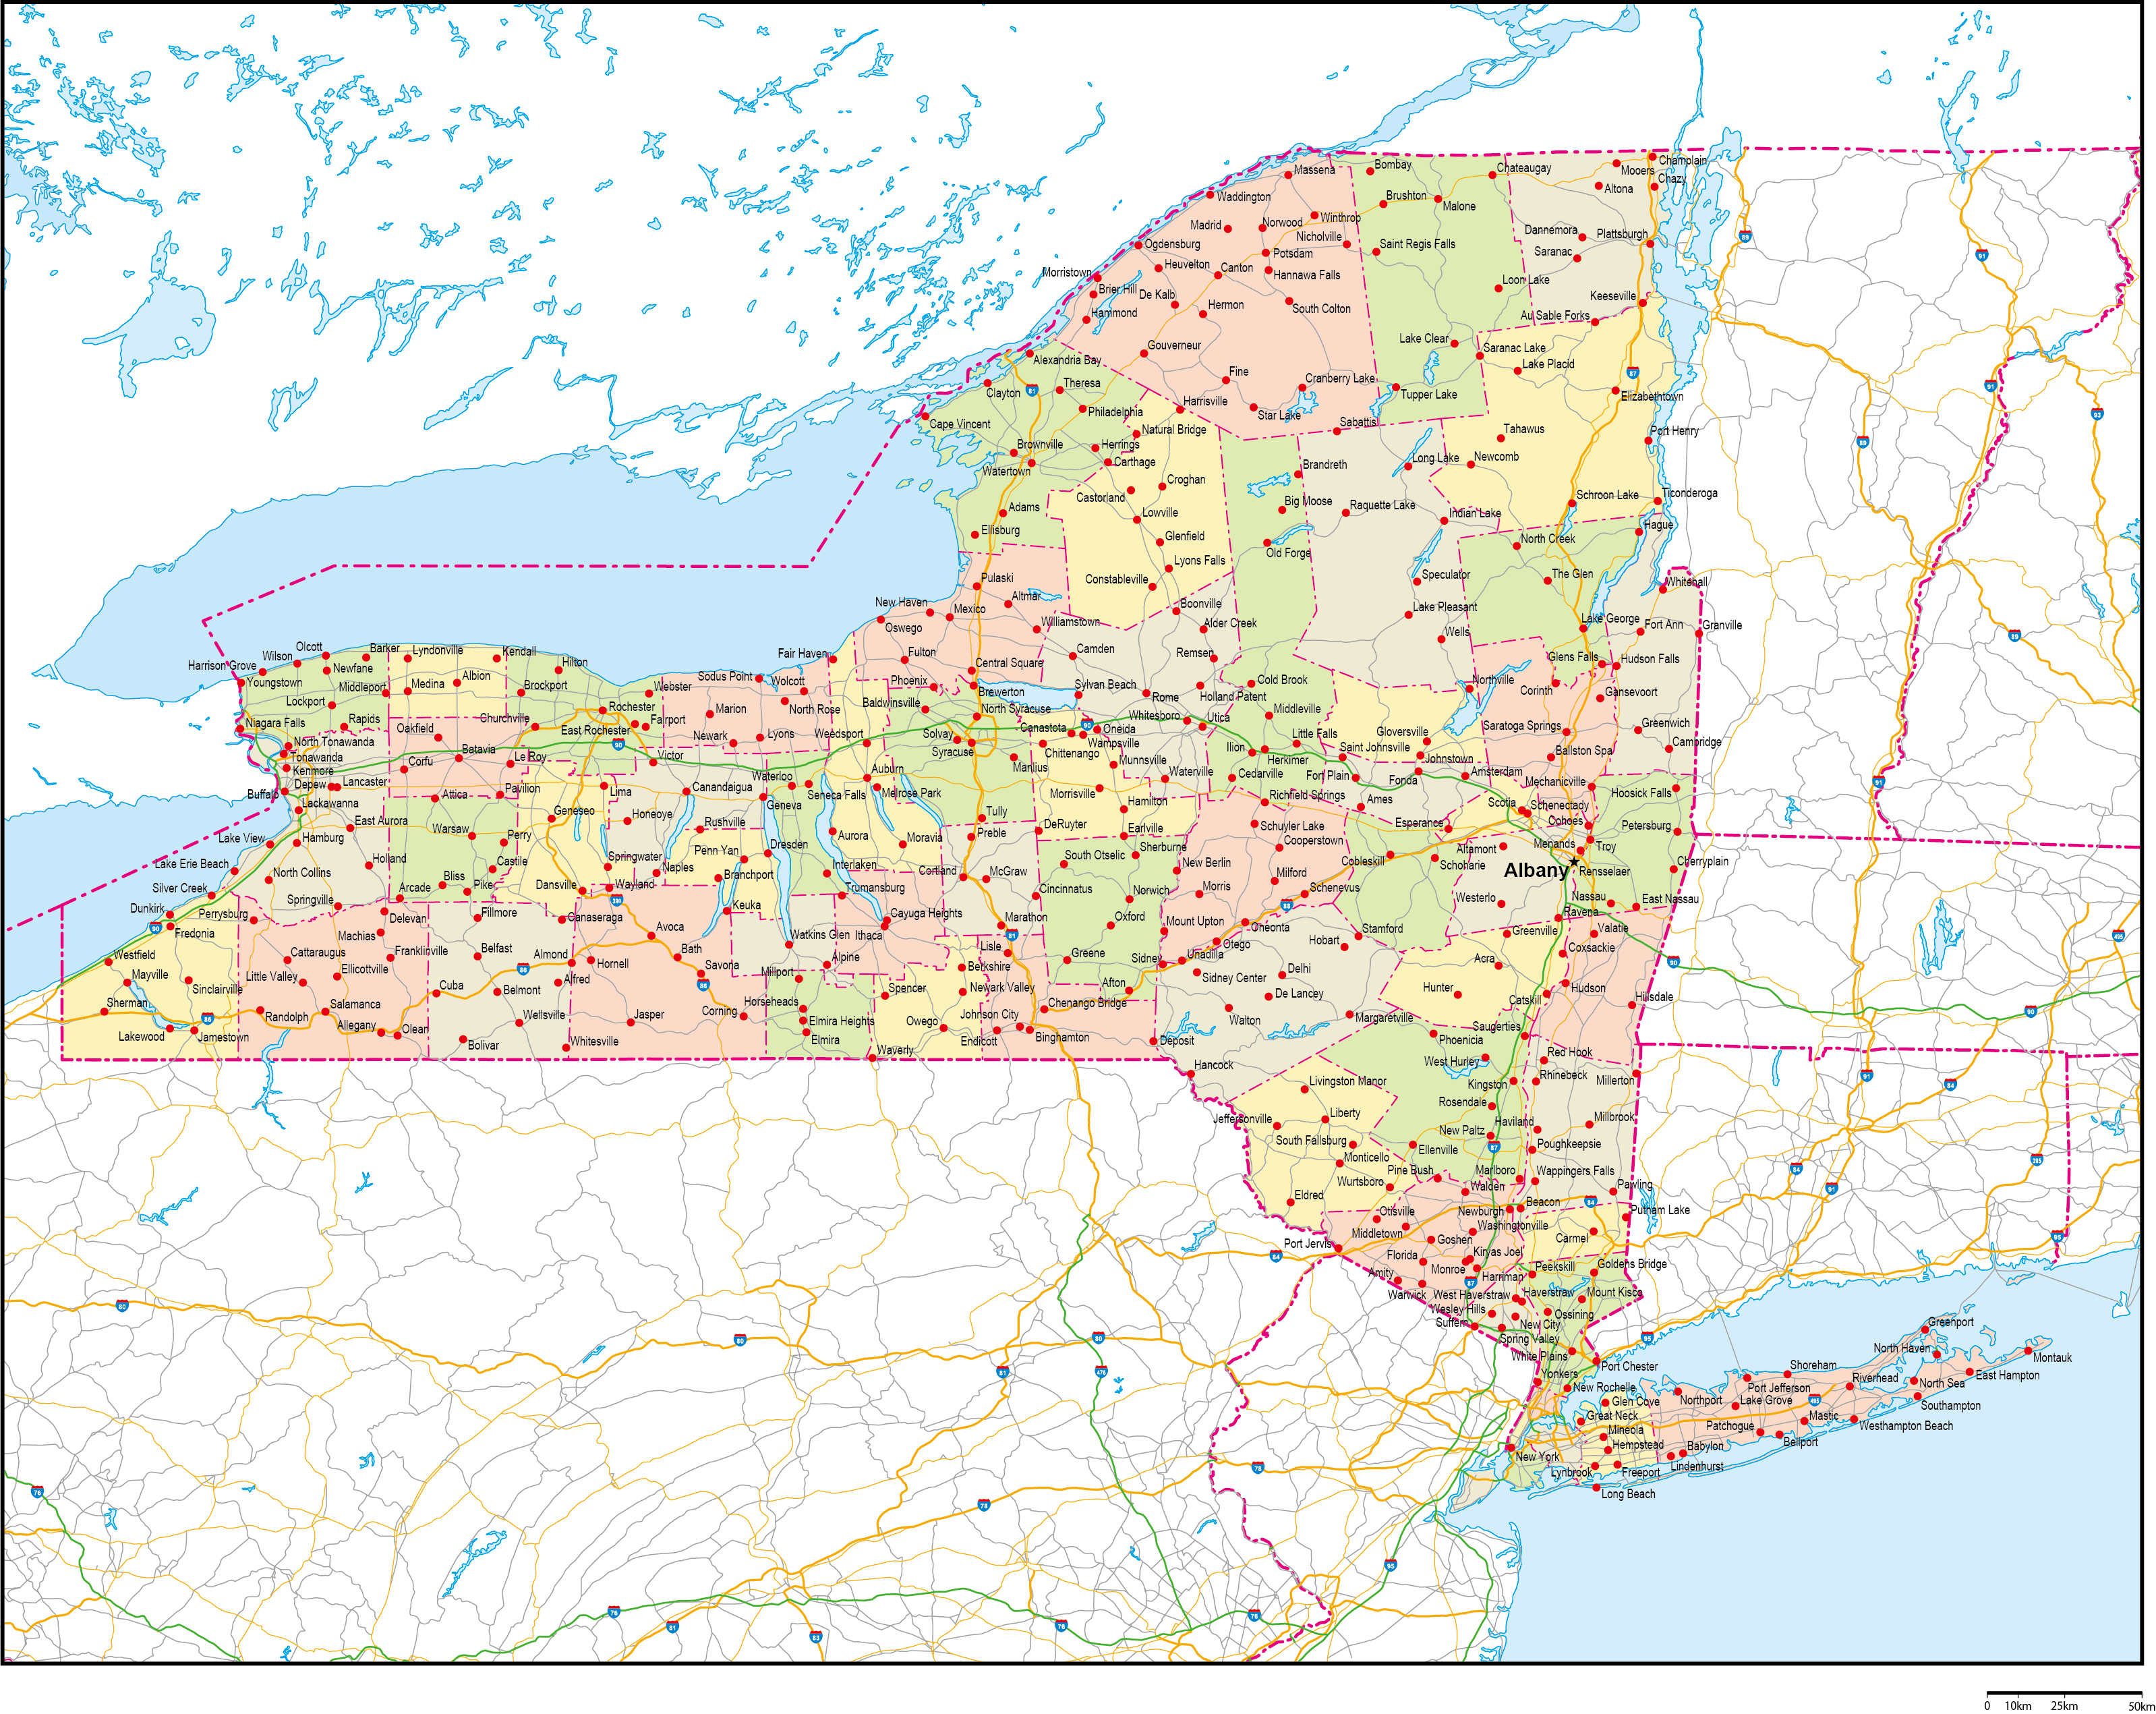 ニューヨーク州郡色分け地図州都・主な都市・道路あり(英語)フリーデータの画像